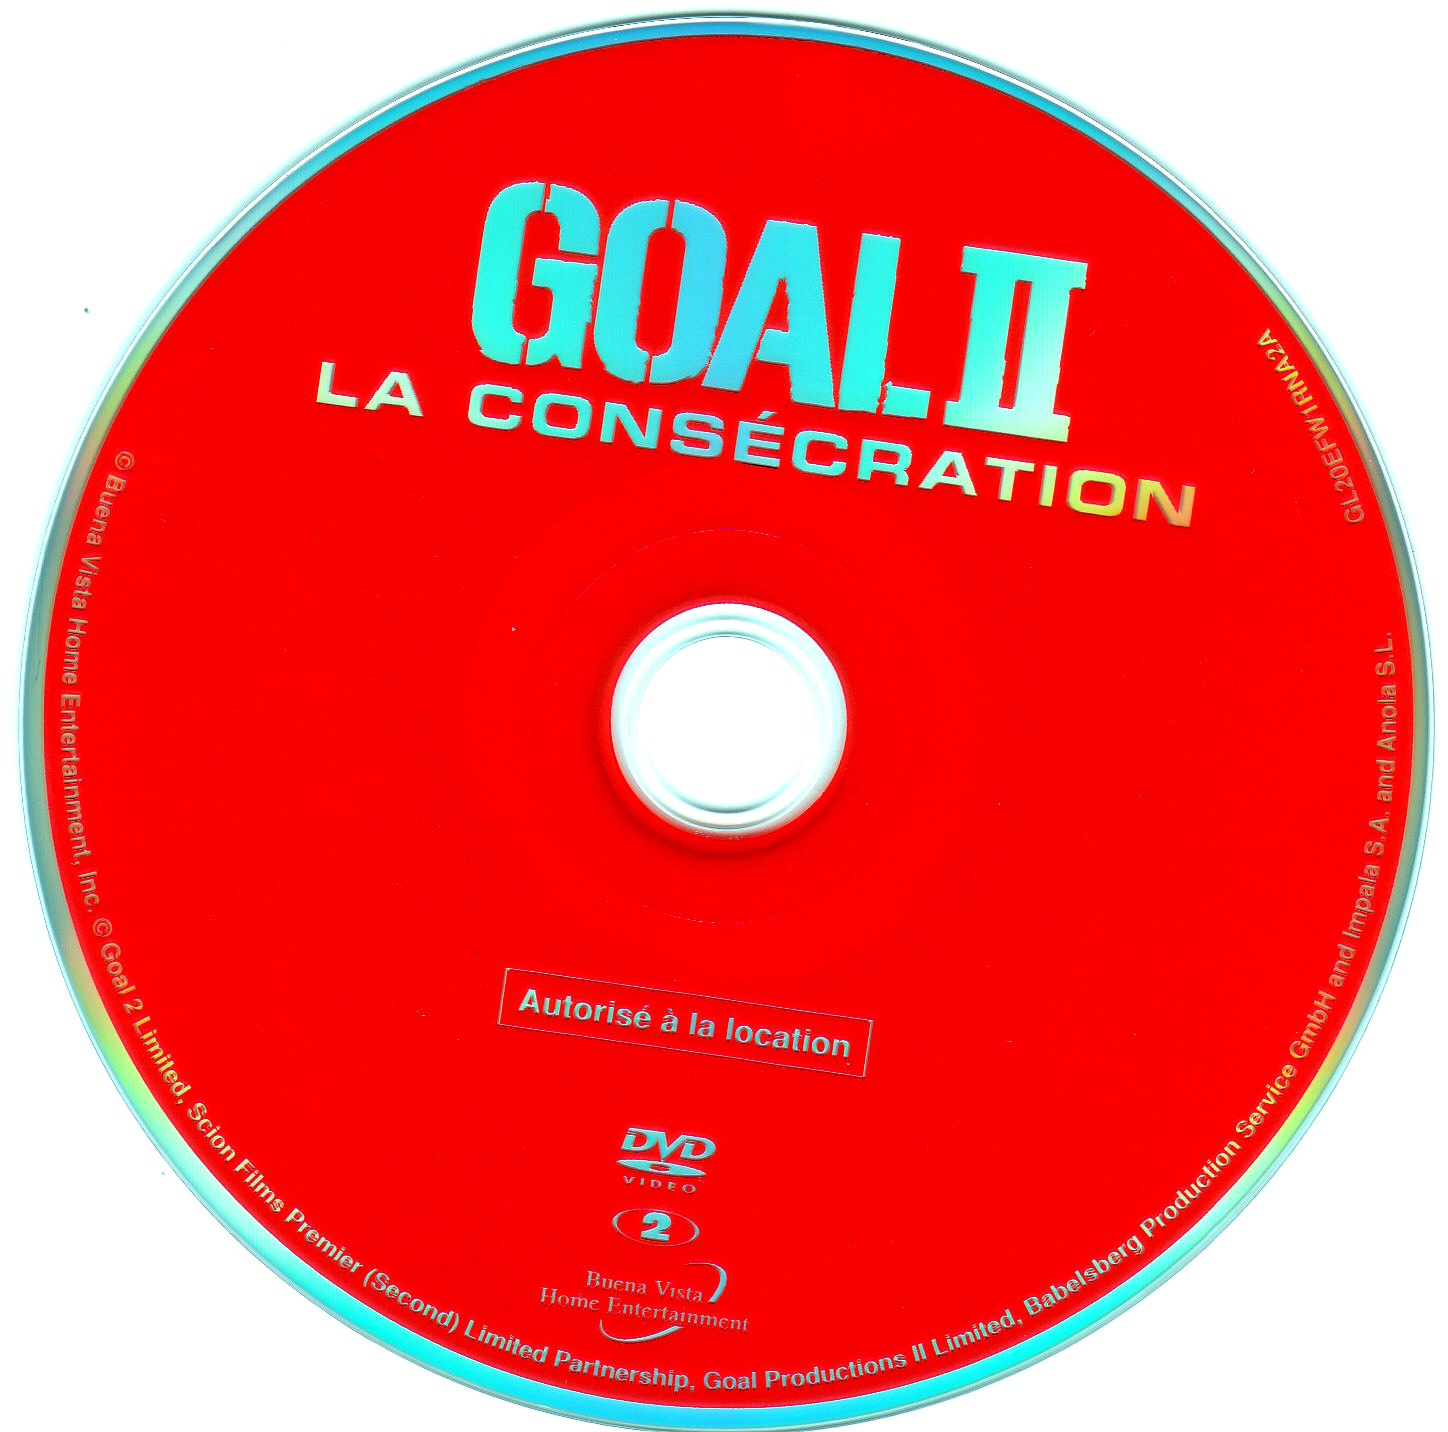 Goal 2 La conscration v2